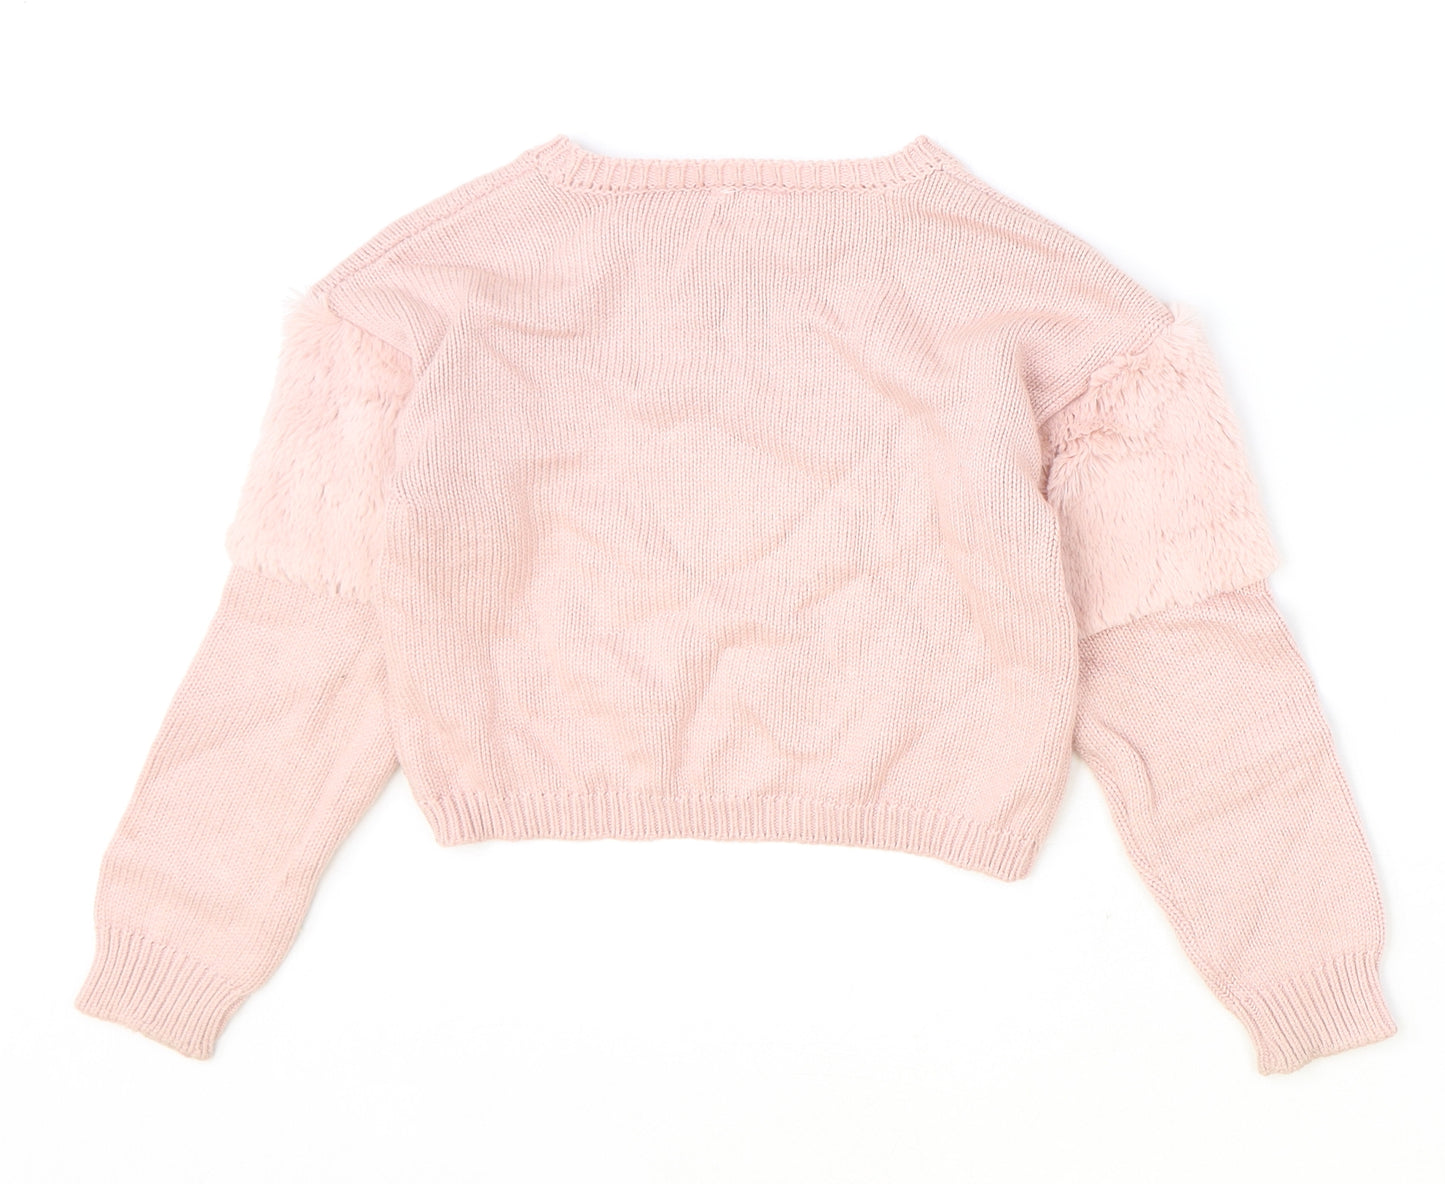 Preworn Girls Pink Round Neck Cotton Pullover Jumper Size 5-6 Years Pullover